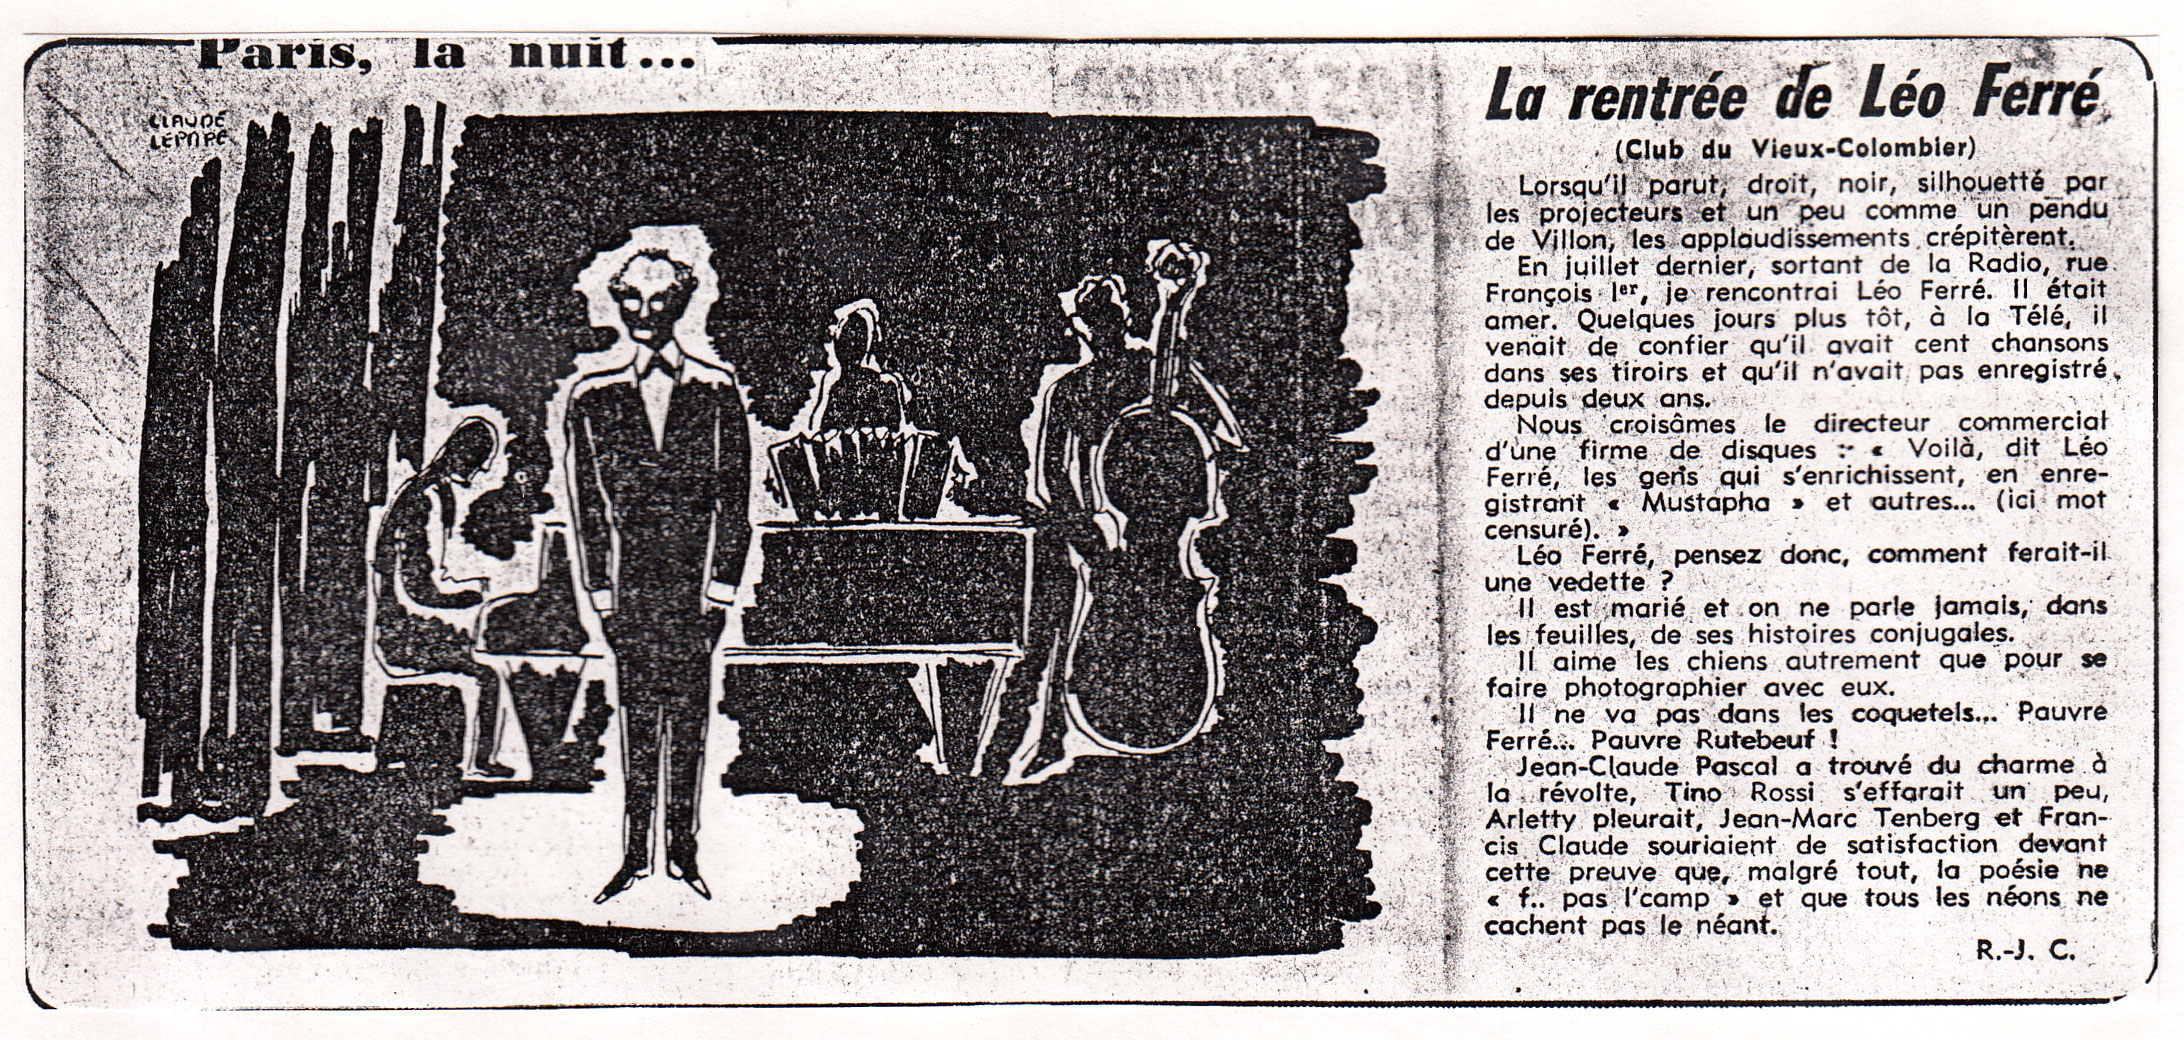 Léo Ferré, La rentrée de Léo Ferré (Club du Vieux-Colombier)